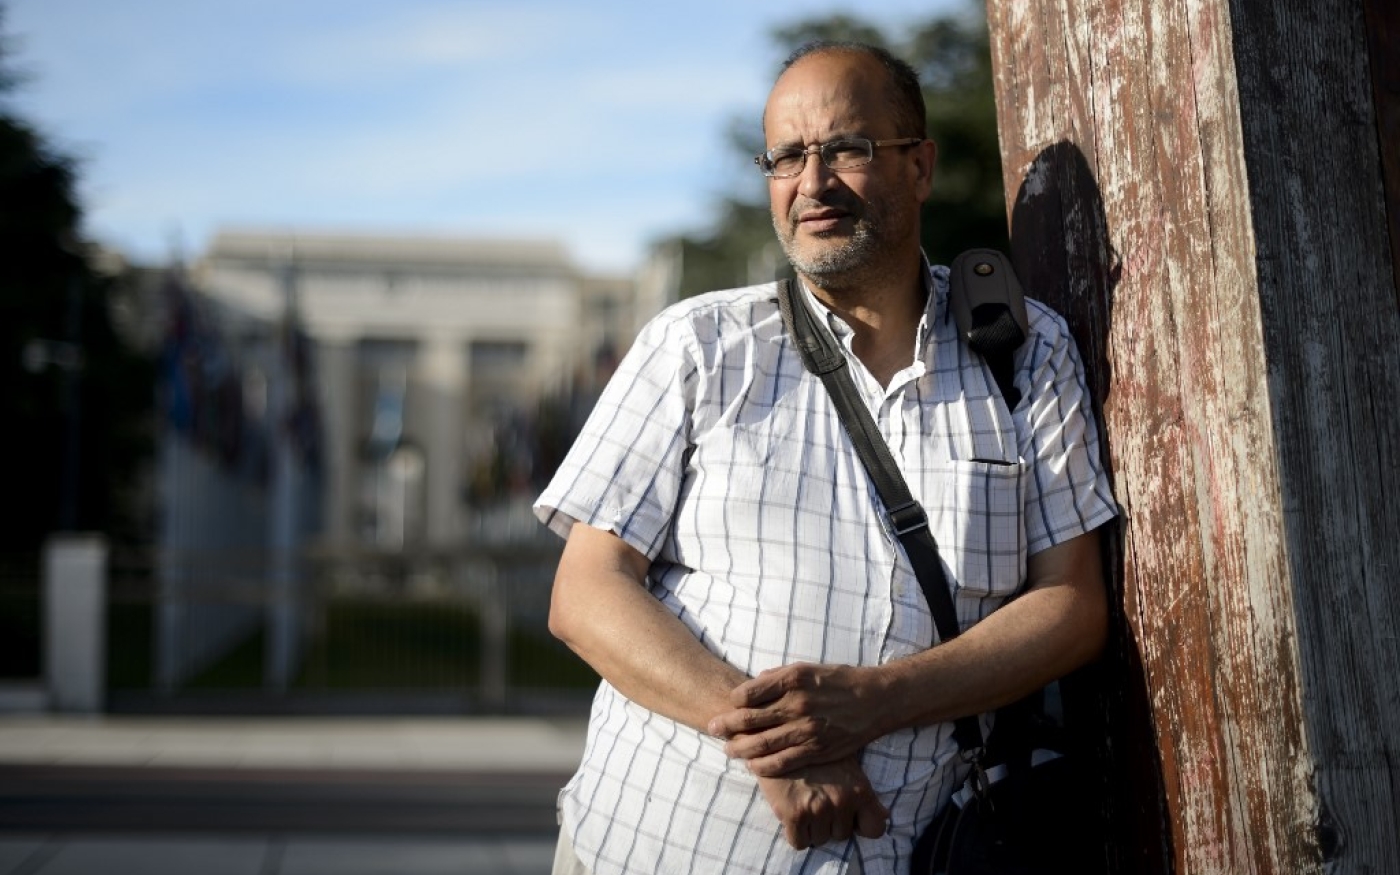 Le journaliste Ali Lmrabet, en grève de la faim depuis le 24 juin pour protester contre le refus des autorités de son pays de renouveler ses papiers d’identité, pose le 29 juin 2015 devant les bureaux des Nations unies à Genève (AFP)